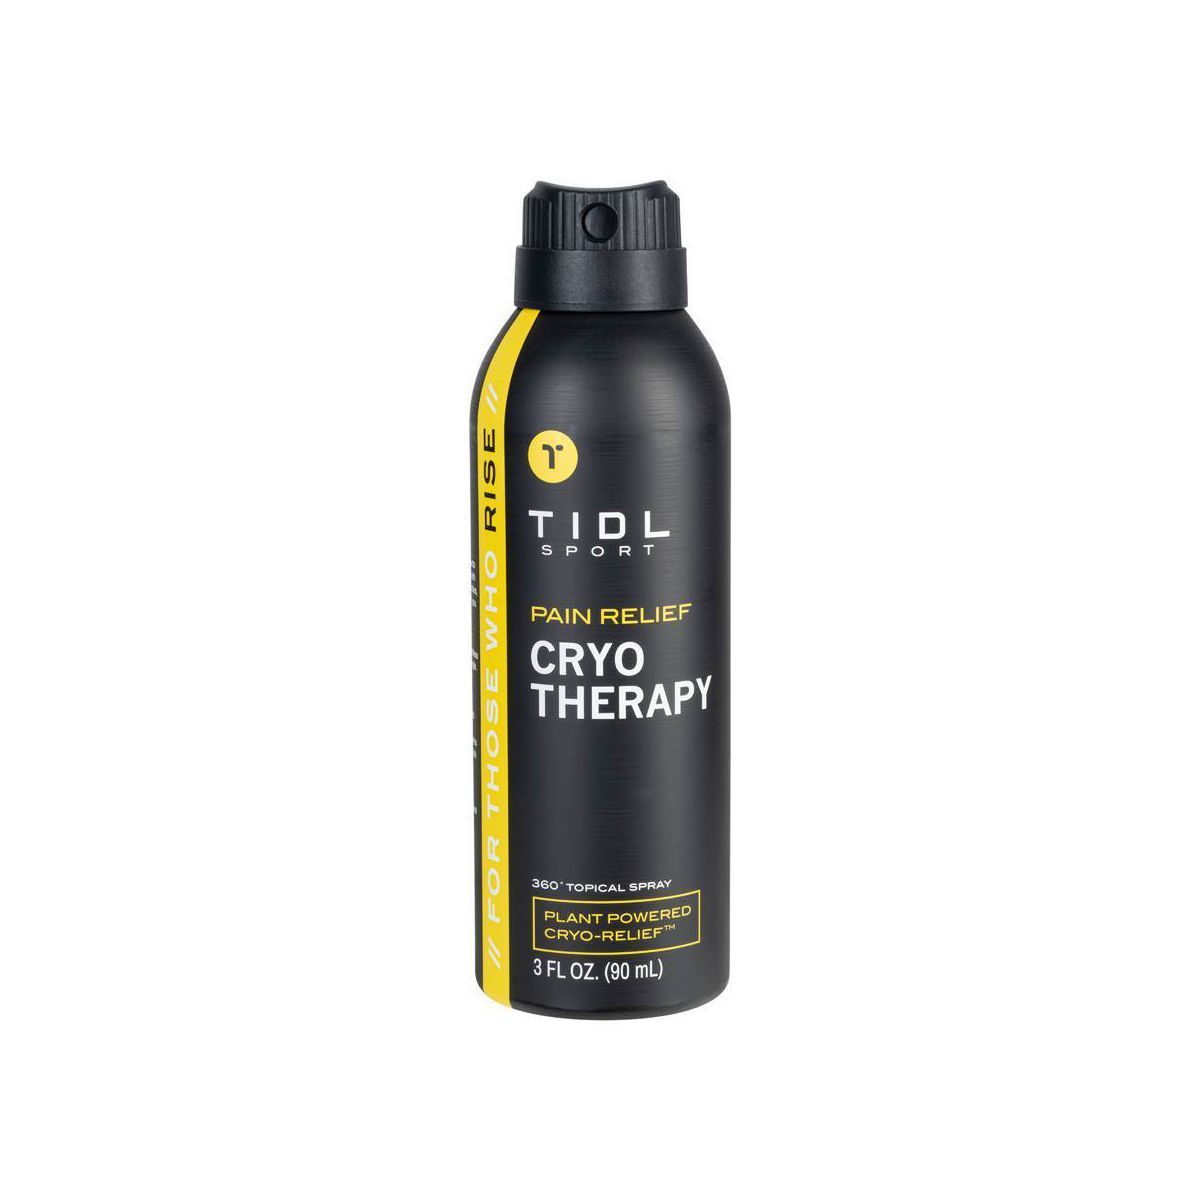 TIDL Sport Pain Relief Spray - 3 fl oz | Target